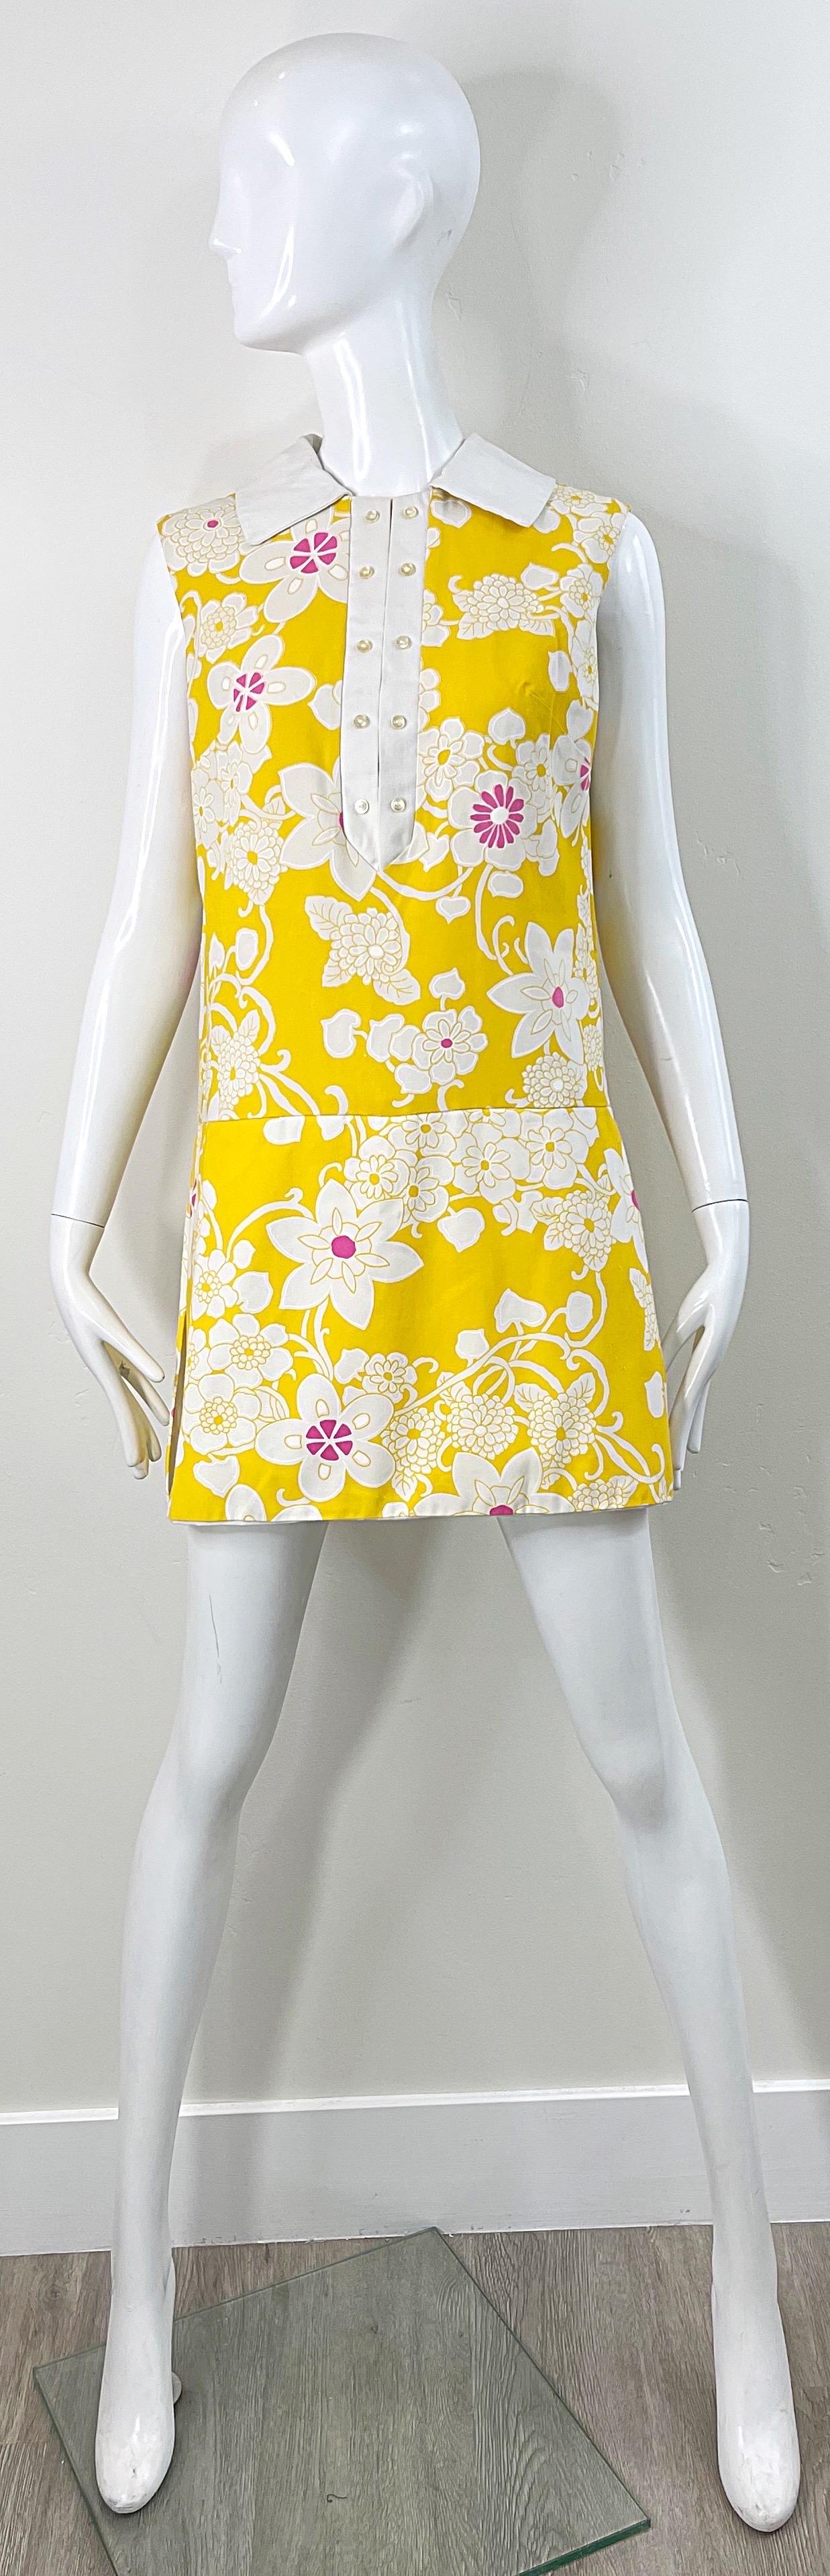 Schicker 1960er Jahre Strampler in Gelb, Rosa und Weiß ! Der Hintergrund ist leuchtend gelb und mit rosa und weißen Blumen bedruckt. Sieht aus wie ein Kleid, ist aber eigentlich ein Strampler mit einem Rock darüber. Scheinbare Knöpfe auf der